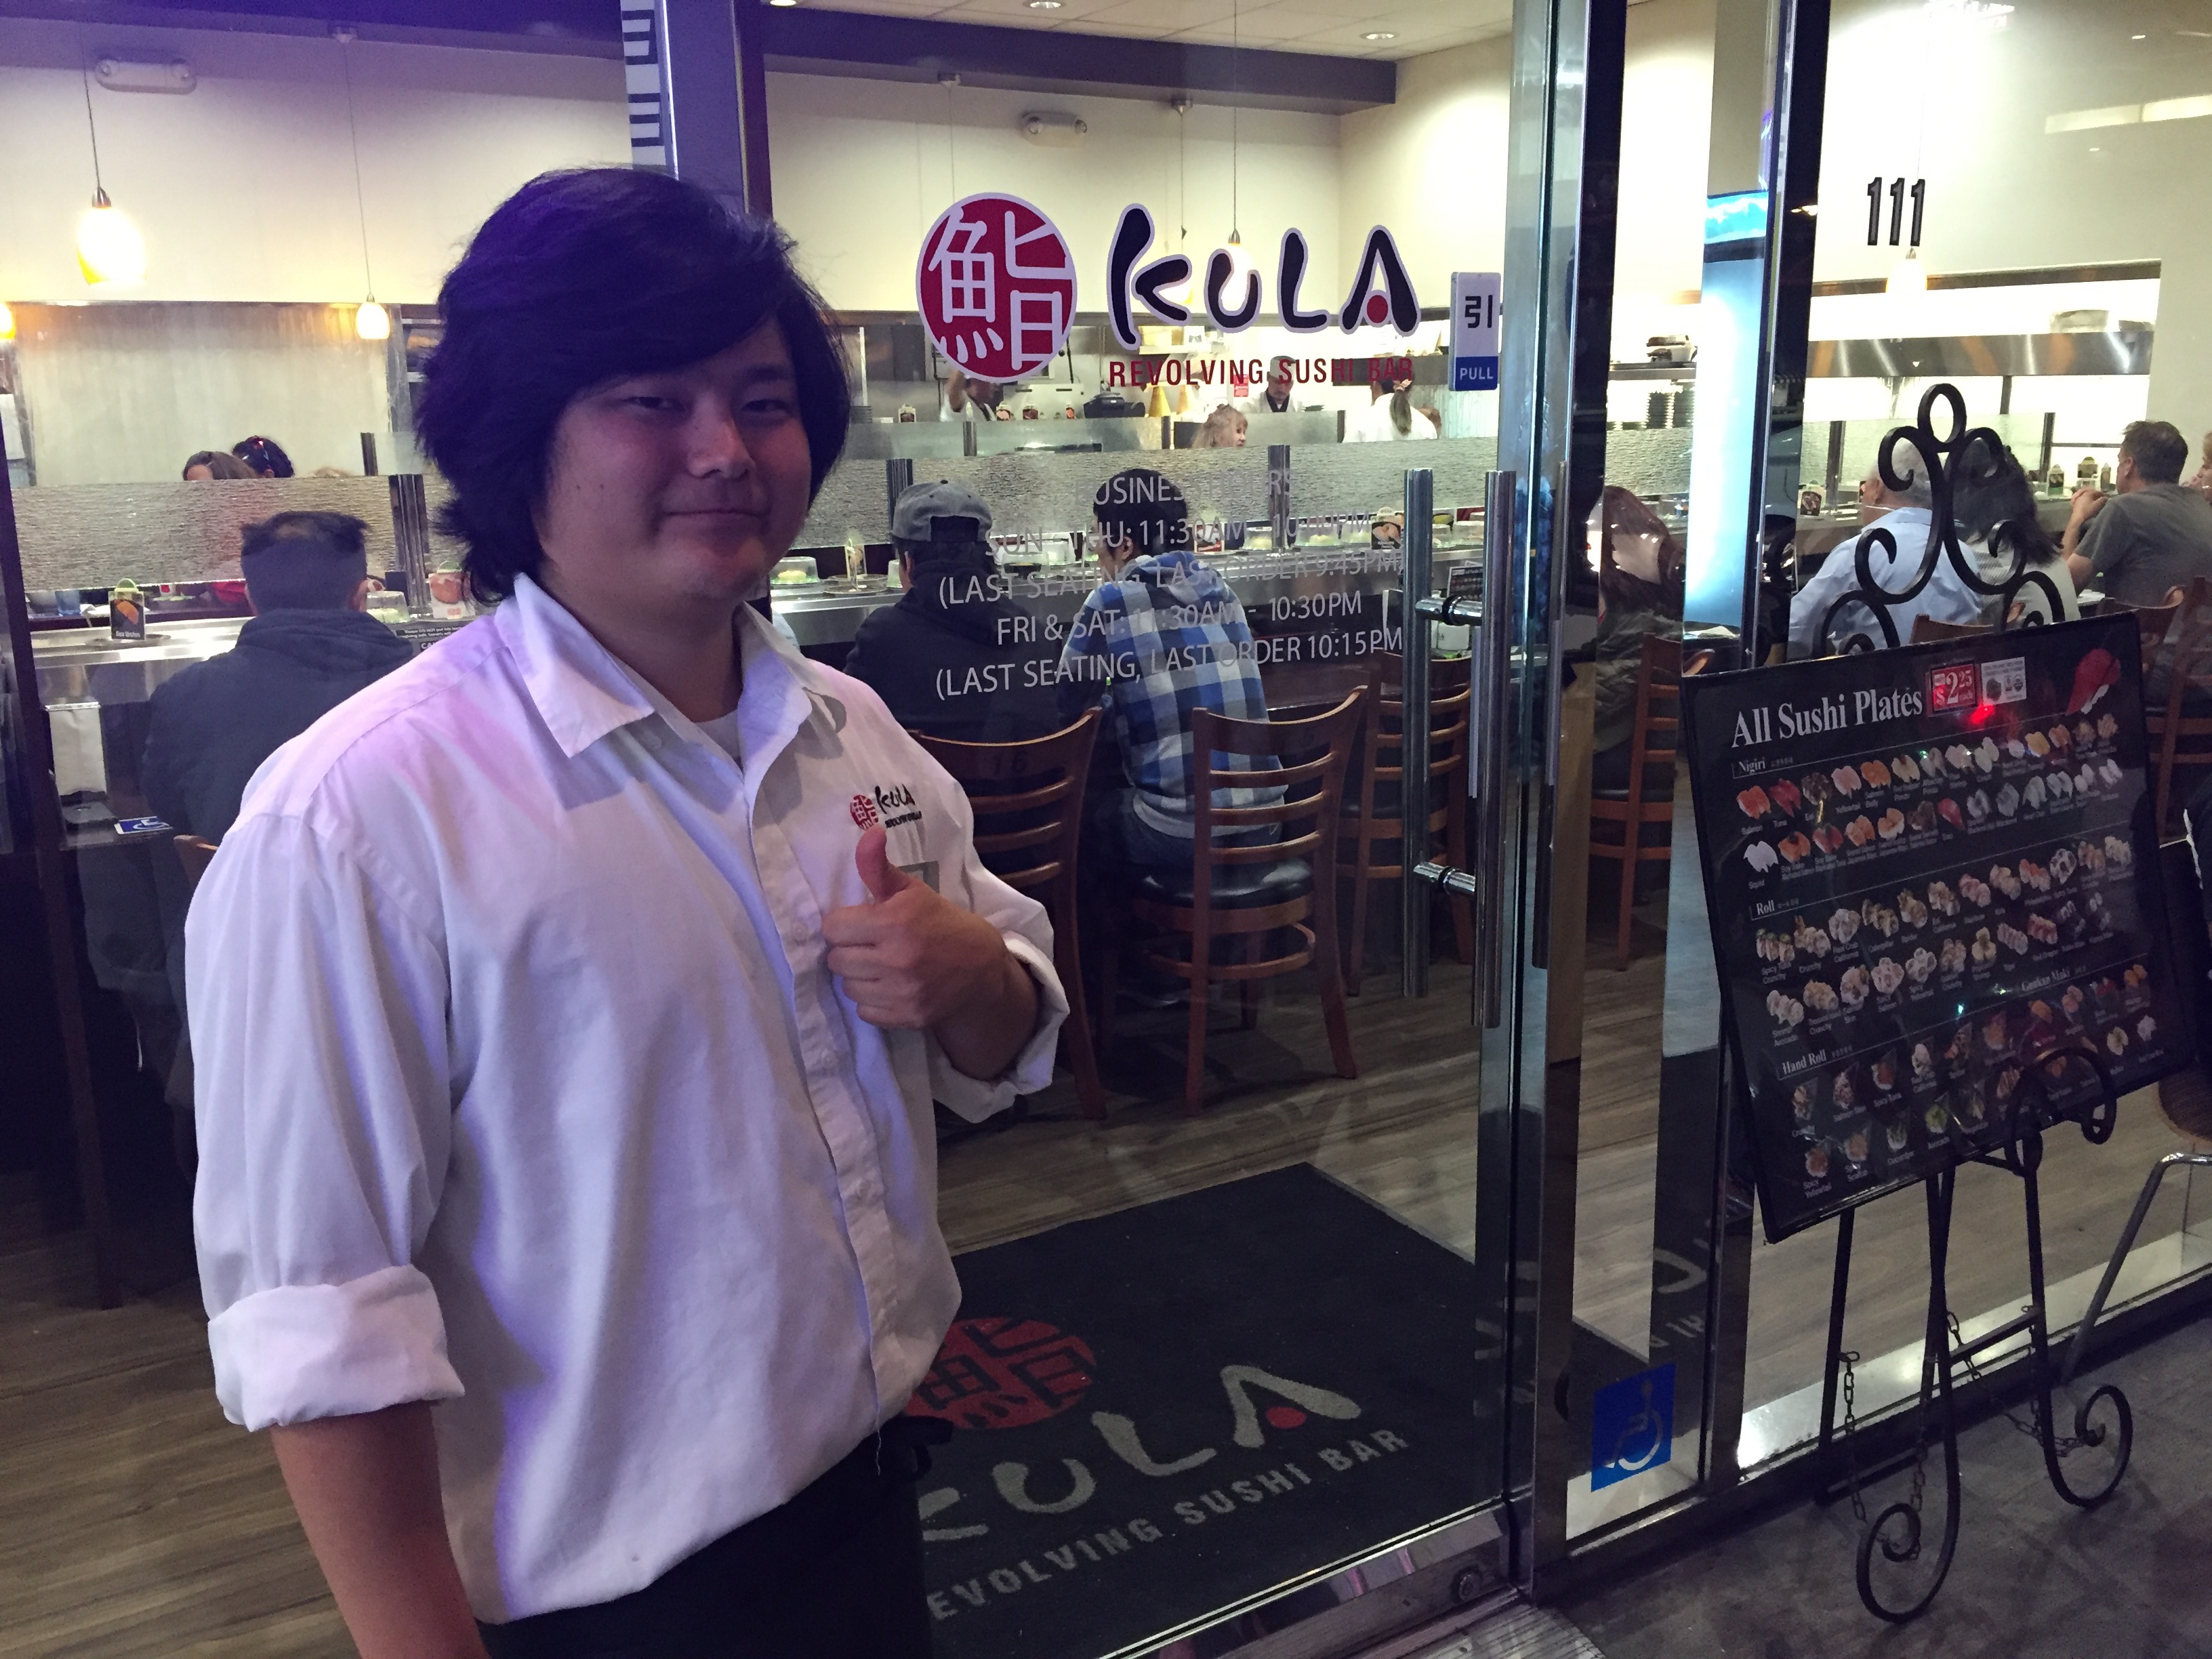 Riku Tanaka at Kula Revolving Sushi